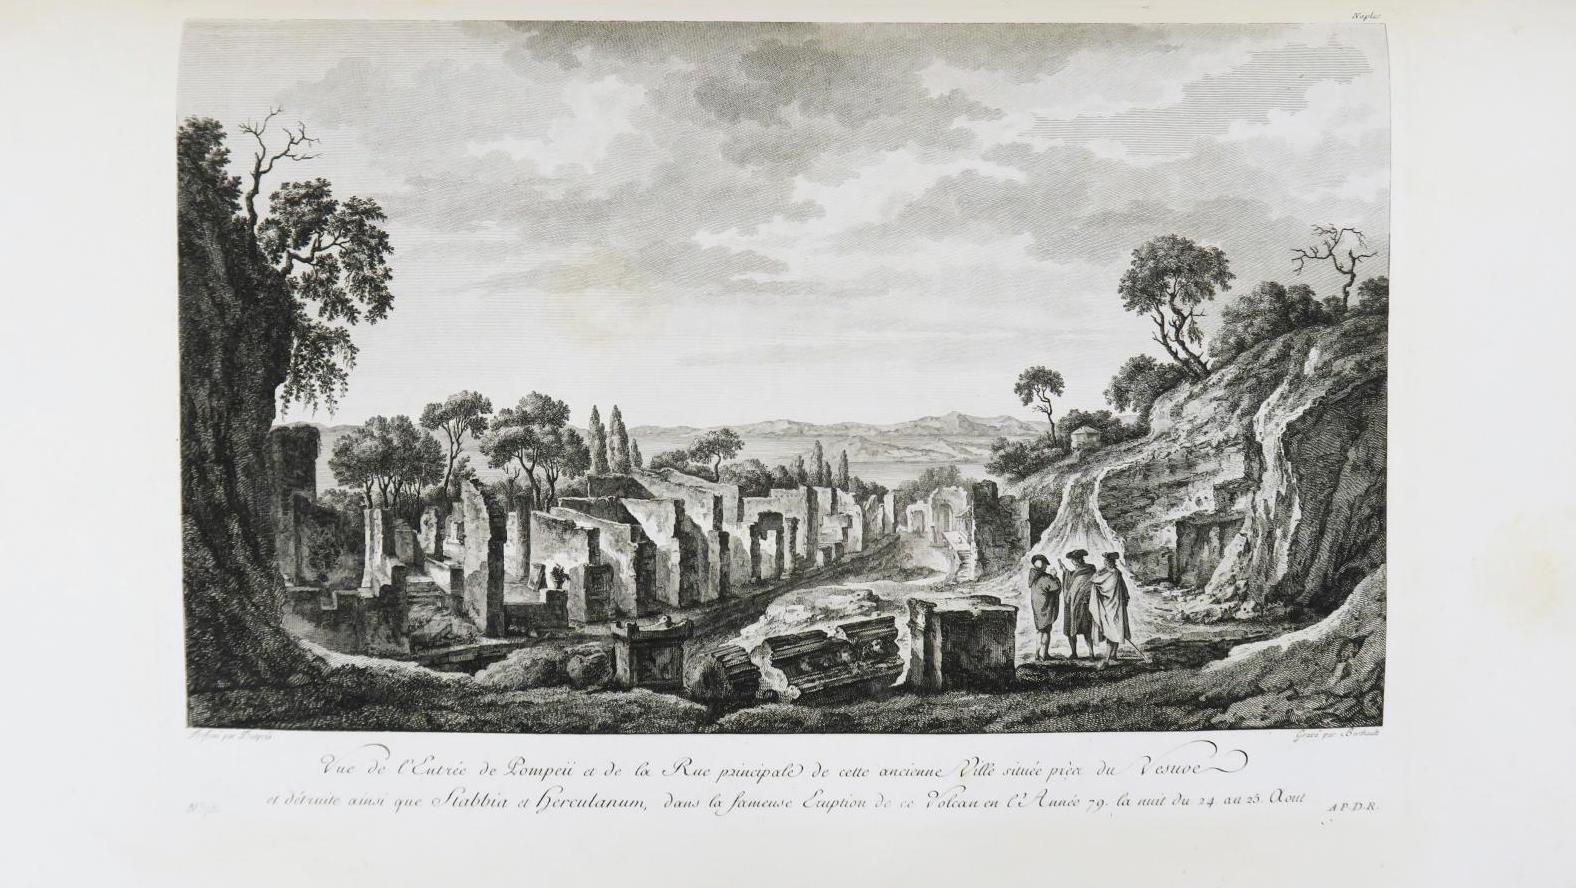 Jean-Claude Richard, abbé de Saint-Non (1727-1791), Voyage pittoresque ou Description... Un voyage à Naples guidé par l’abbé Saint-Non